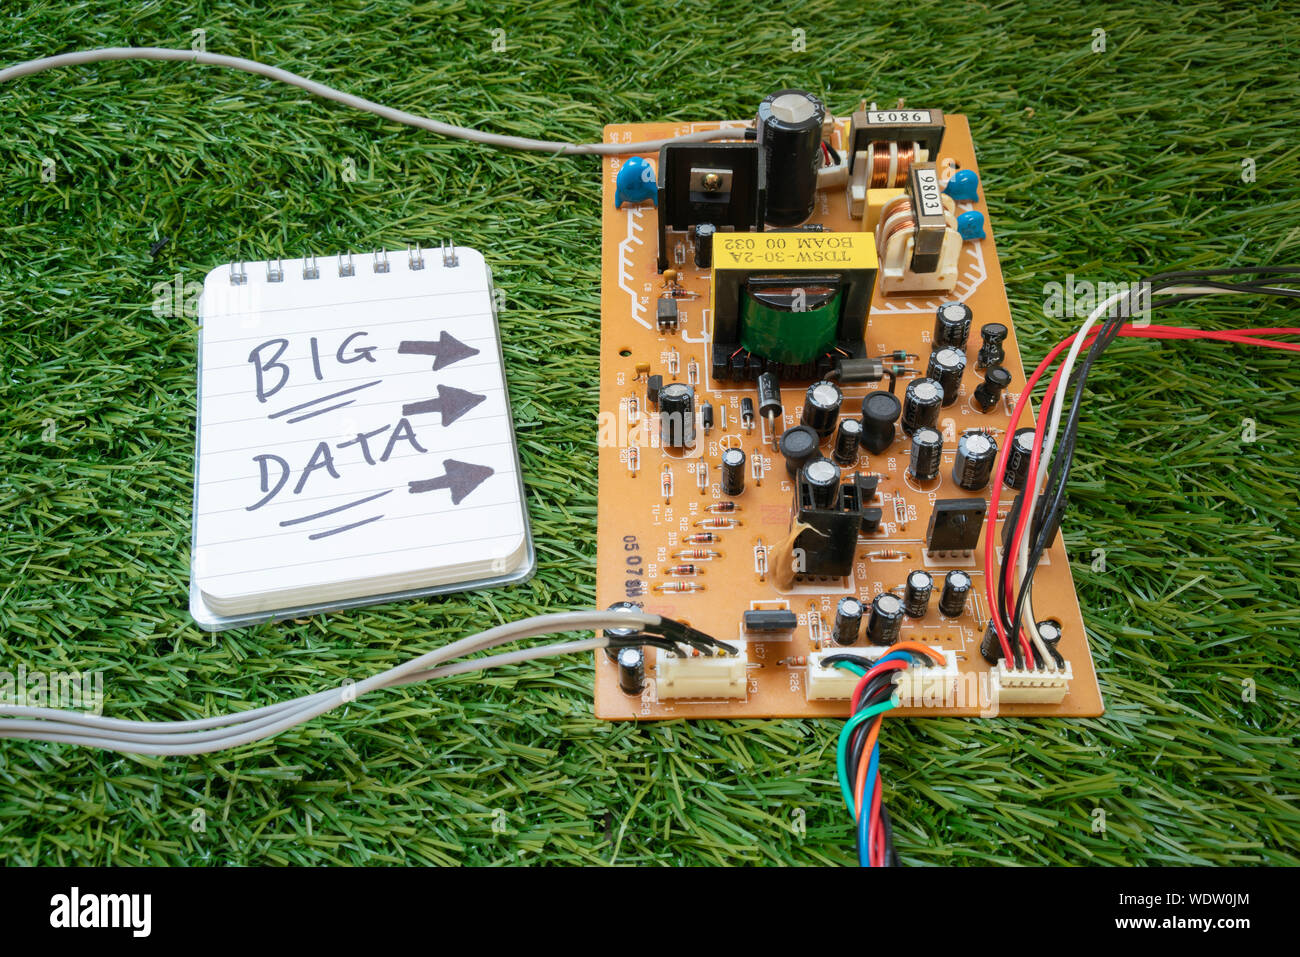 Un circuit électronique et les fils, avec un bloc-notes à lire 'Big Data' sur l'herbe. Les données d'un parc ? Banque D'Images